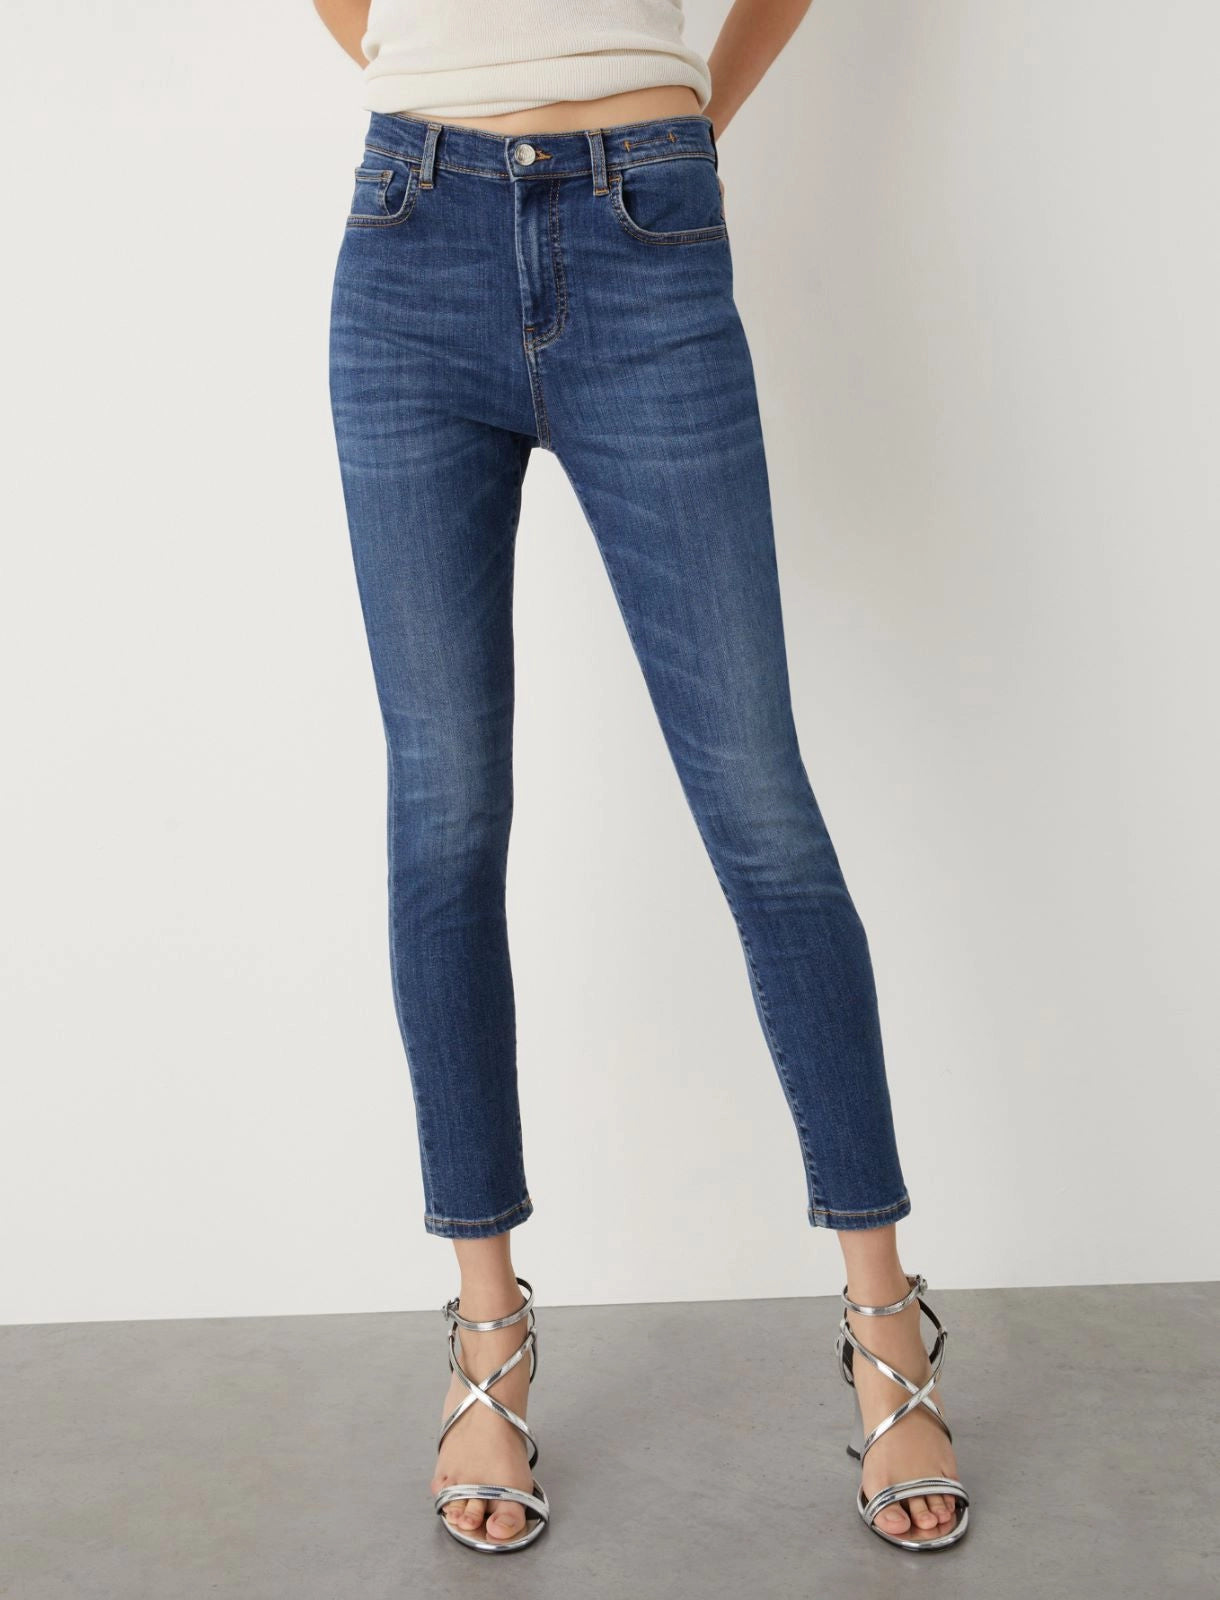 Jeans skinny fit MARELLA WSKIN